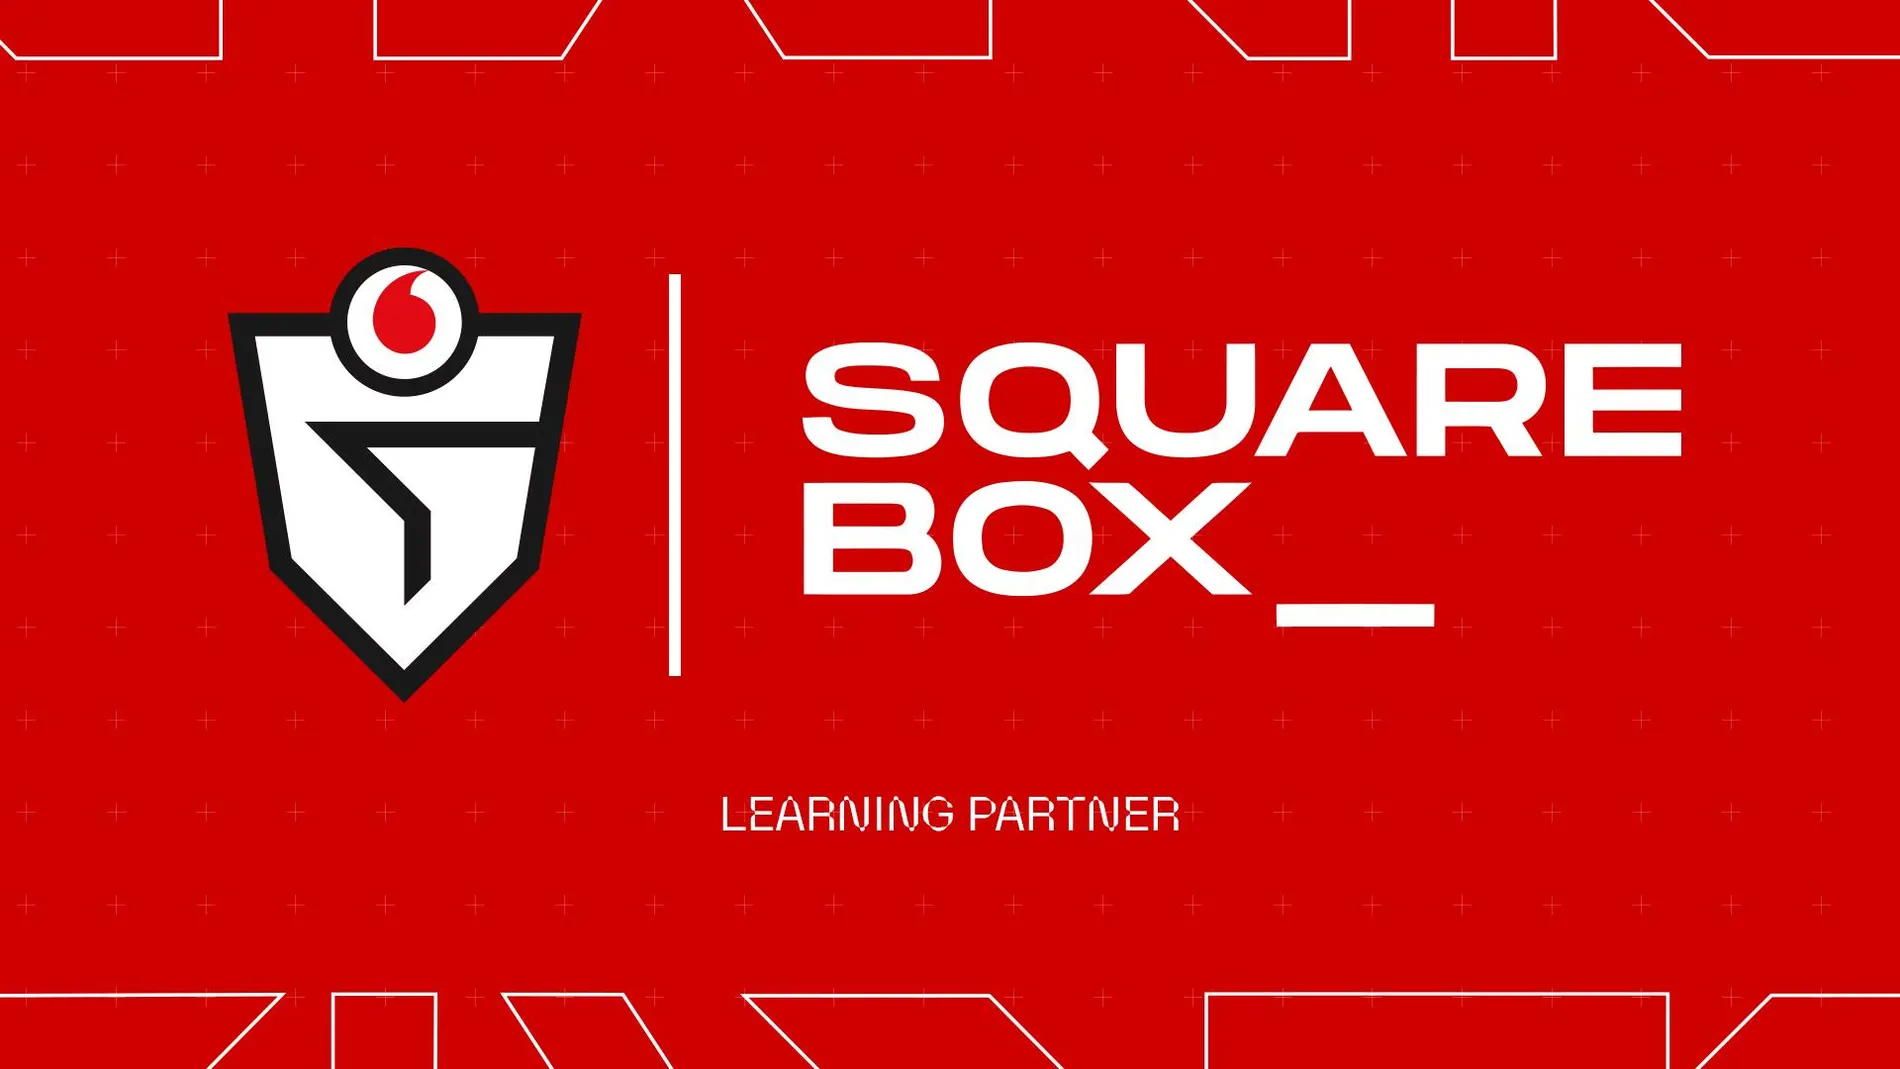 Squarebox formará parte de Vodafone Giants como escuela virtual para el desarrollo profesional dentro de los esports